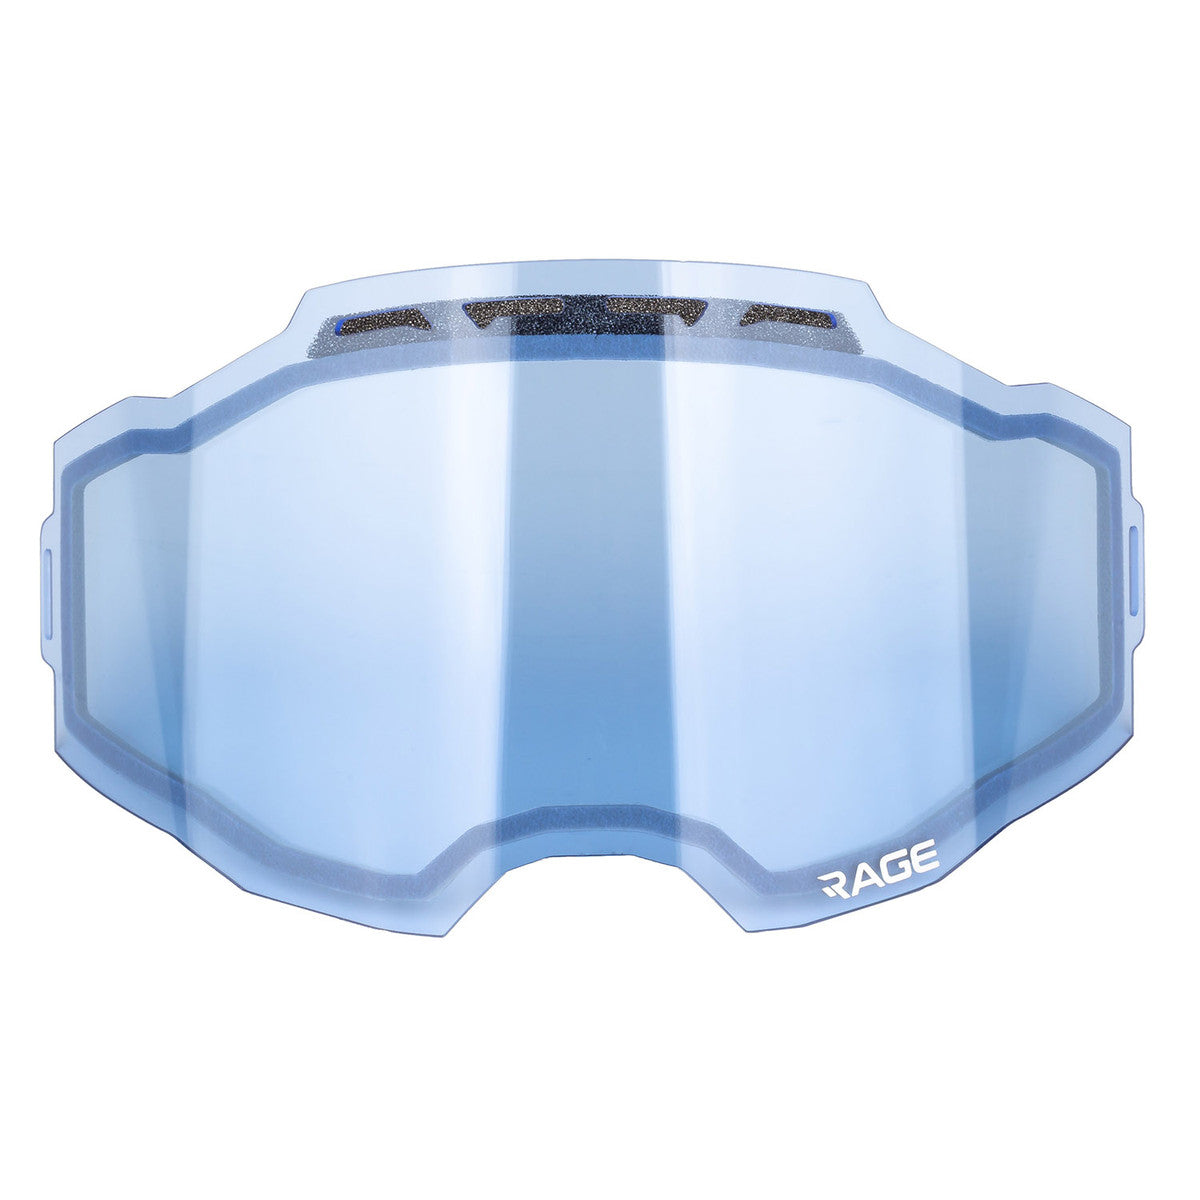 Klim, Klim Rage Lens, Snow Goggle Lens Replacement, Snow Gear, Blue Tint Lens Replacements, 3402-000